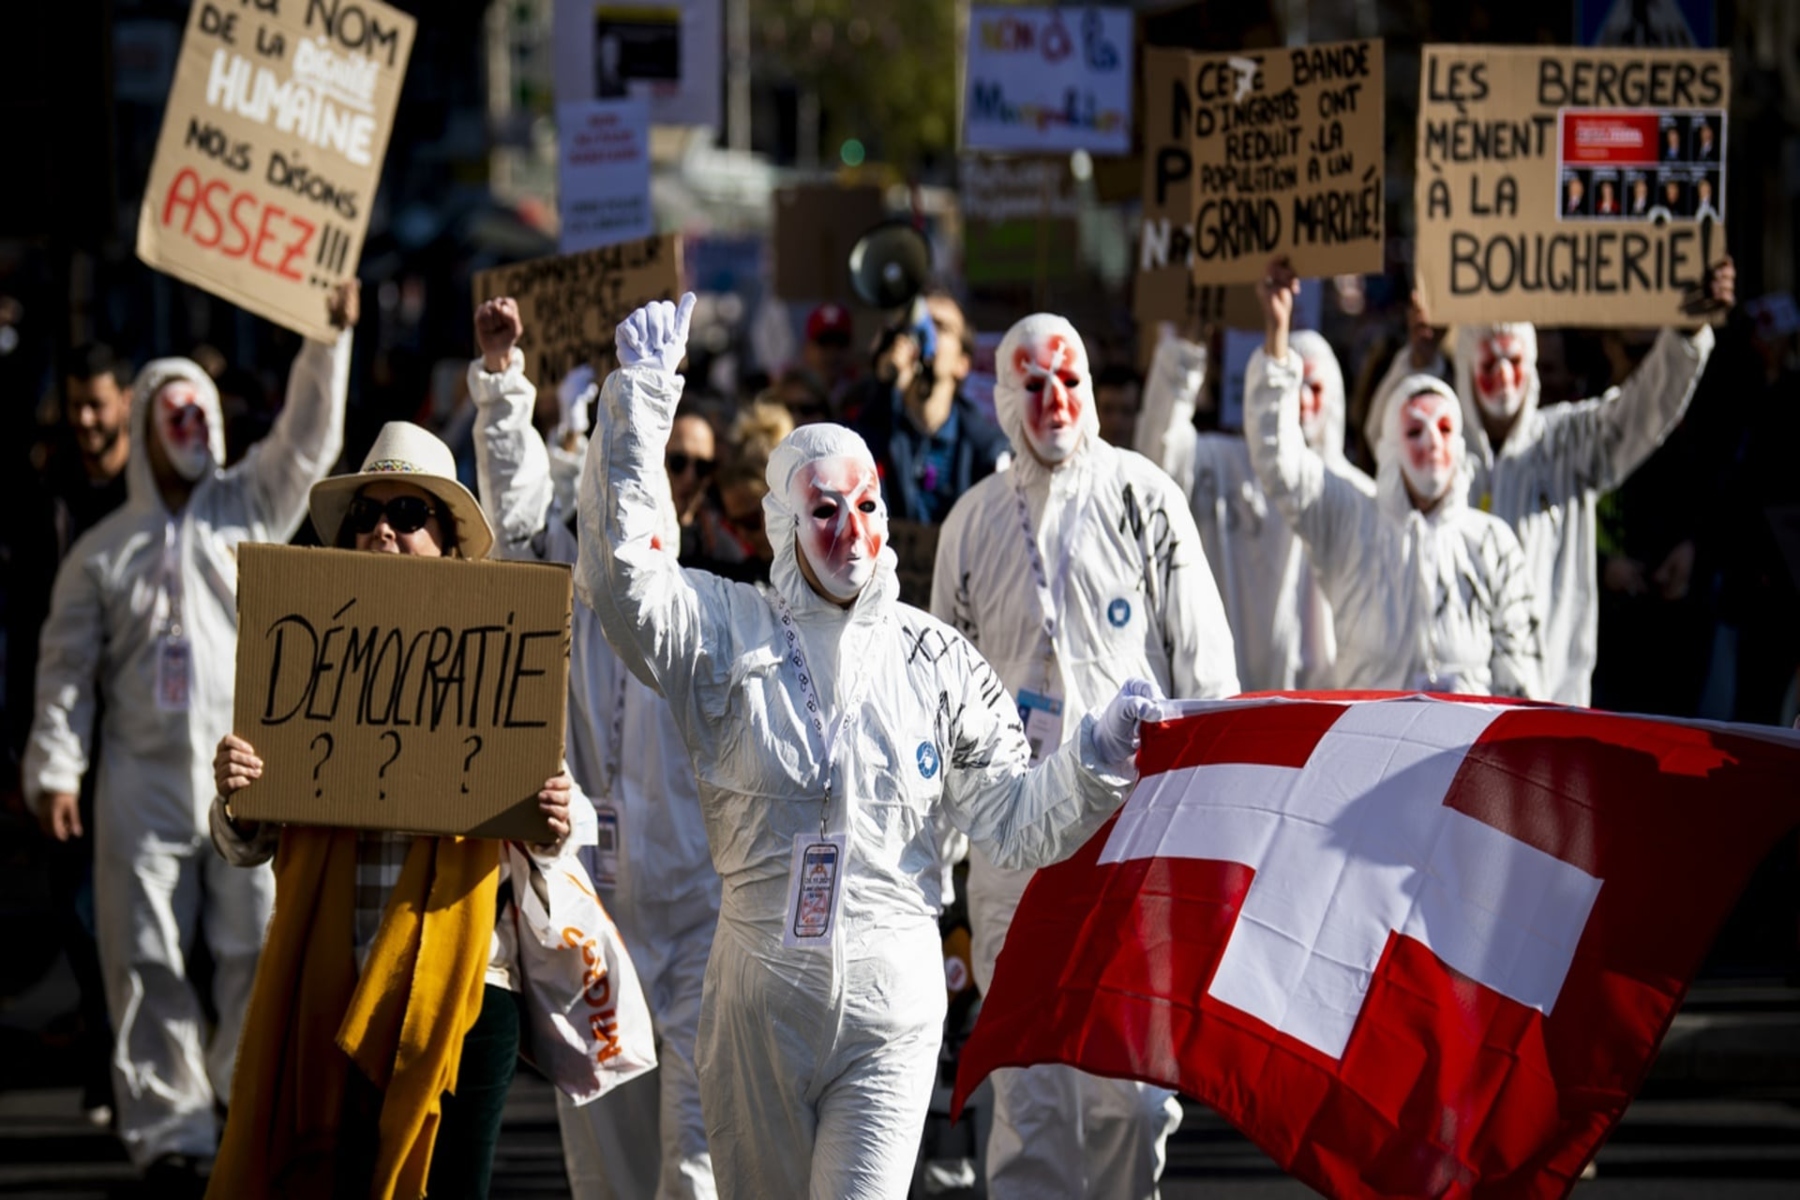 Ελβετία δημοψήφισμα κορωνοϊός: Οι Ελβετοί απέρριψαν την πρόταση κατάργησης του πιστοποιητικού εμβολιασμού για την Covid